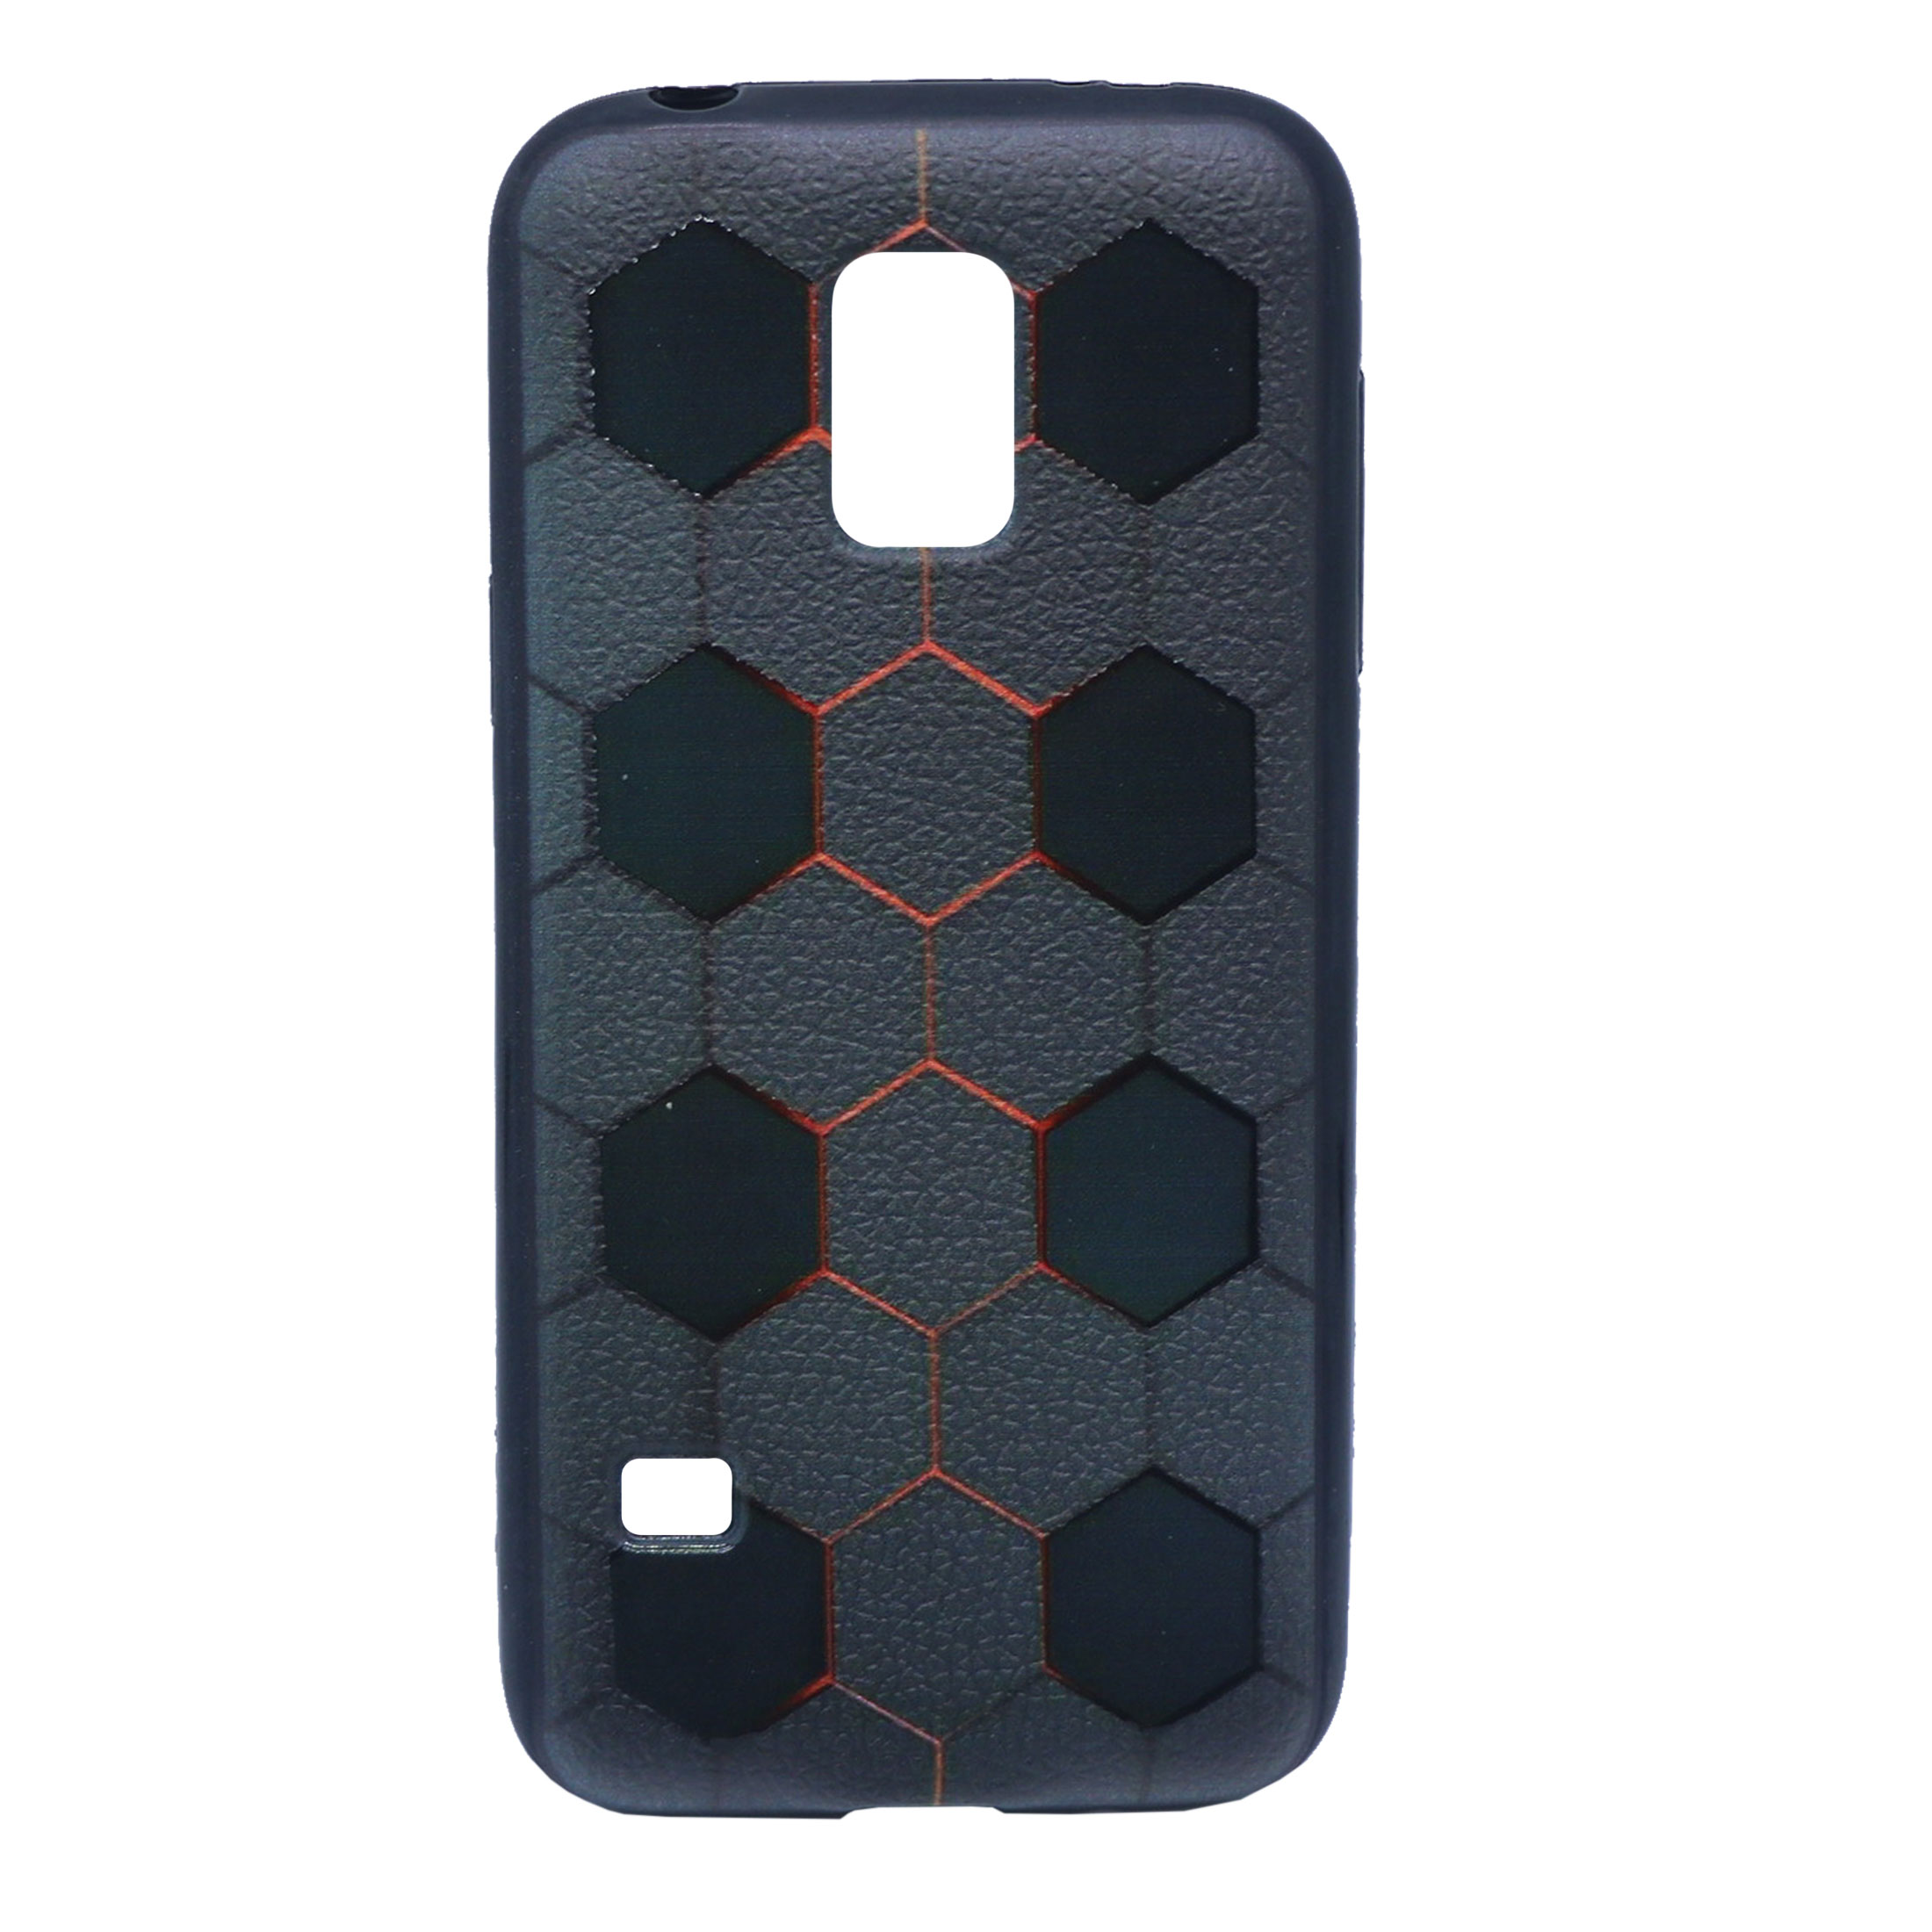 کاور طرح 6 ضلعی مدل T-01 مناسب برای گوشی موبایل سامسونگ Galaxy S5 Mini